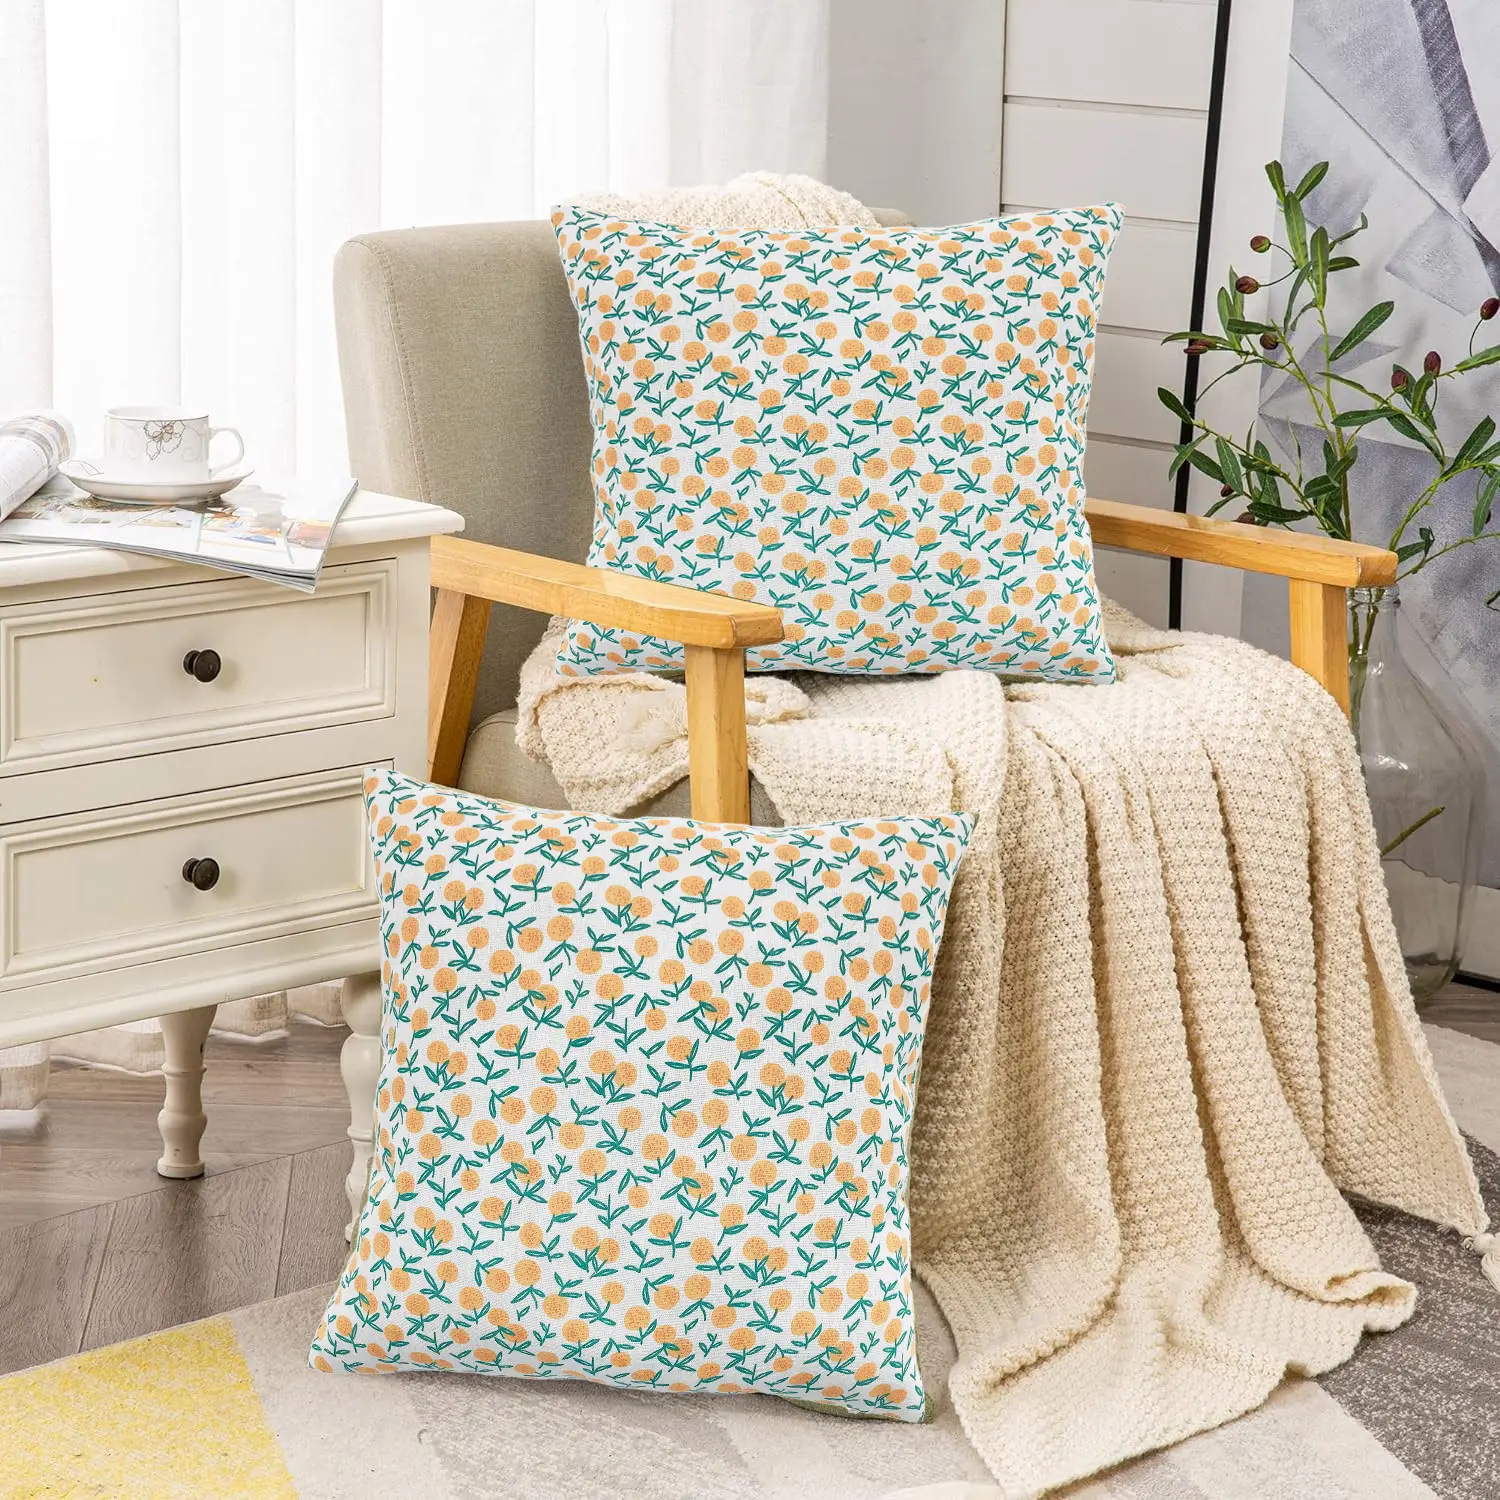 Capas de travesseiro bordadas para sofá doméstico, capas de travesseiro bordadas personalizadas para sofá, preço de fábrica, capa de almofada bordada